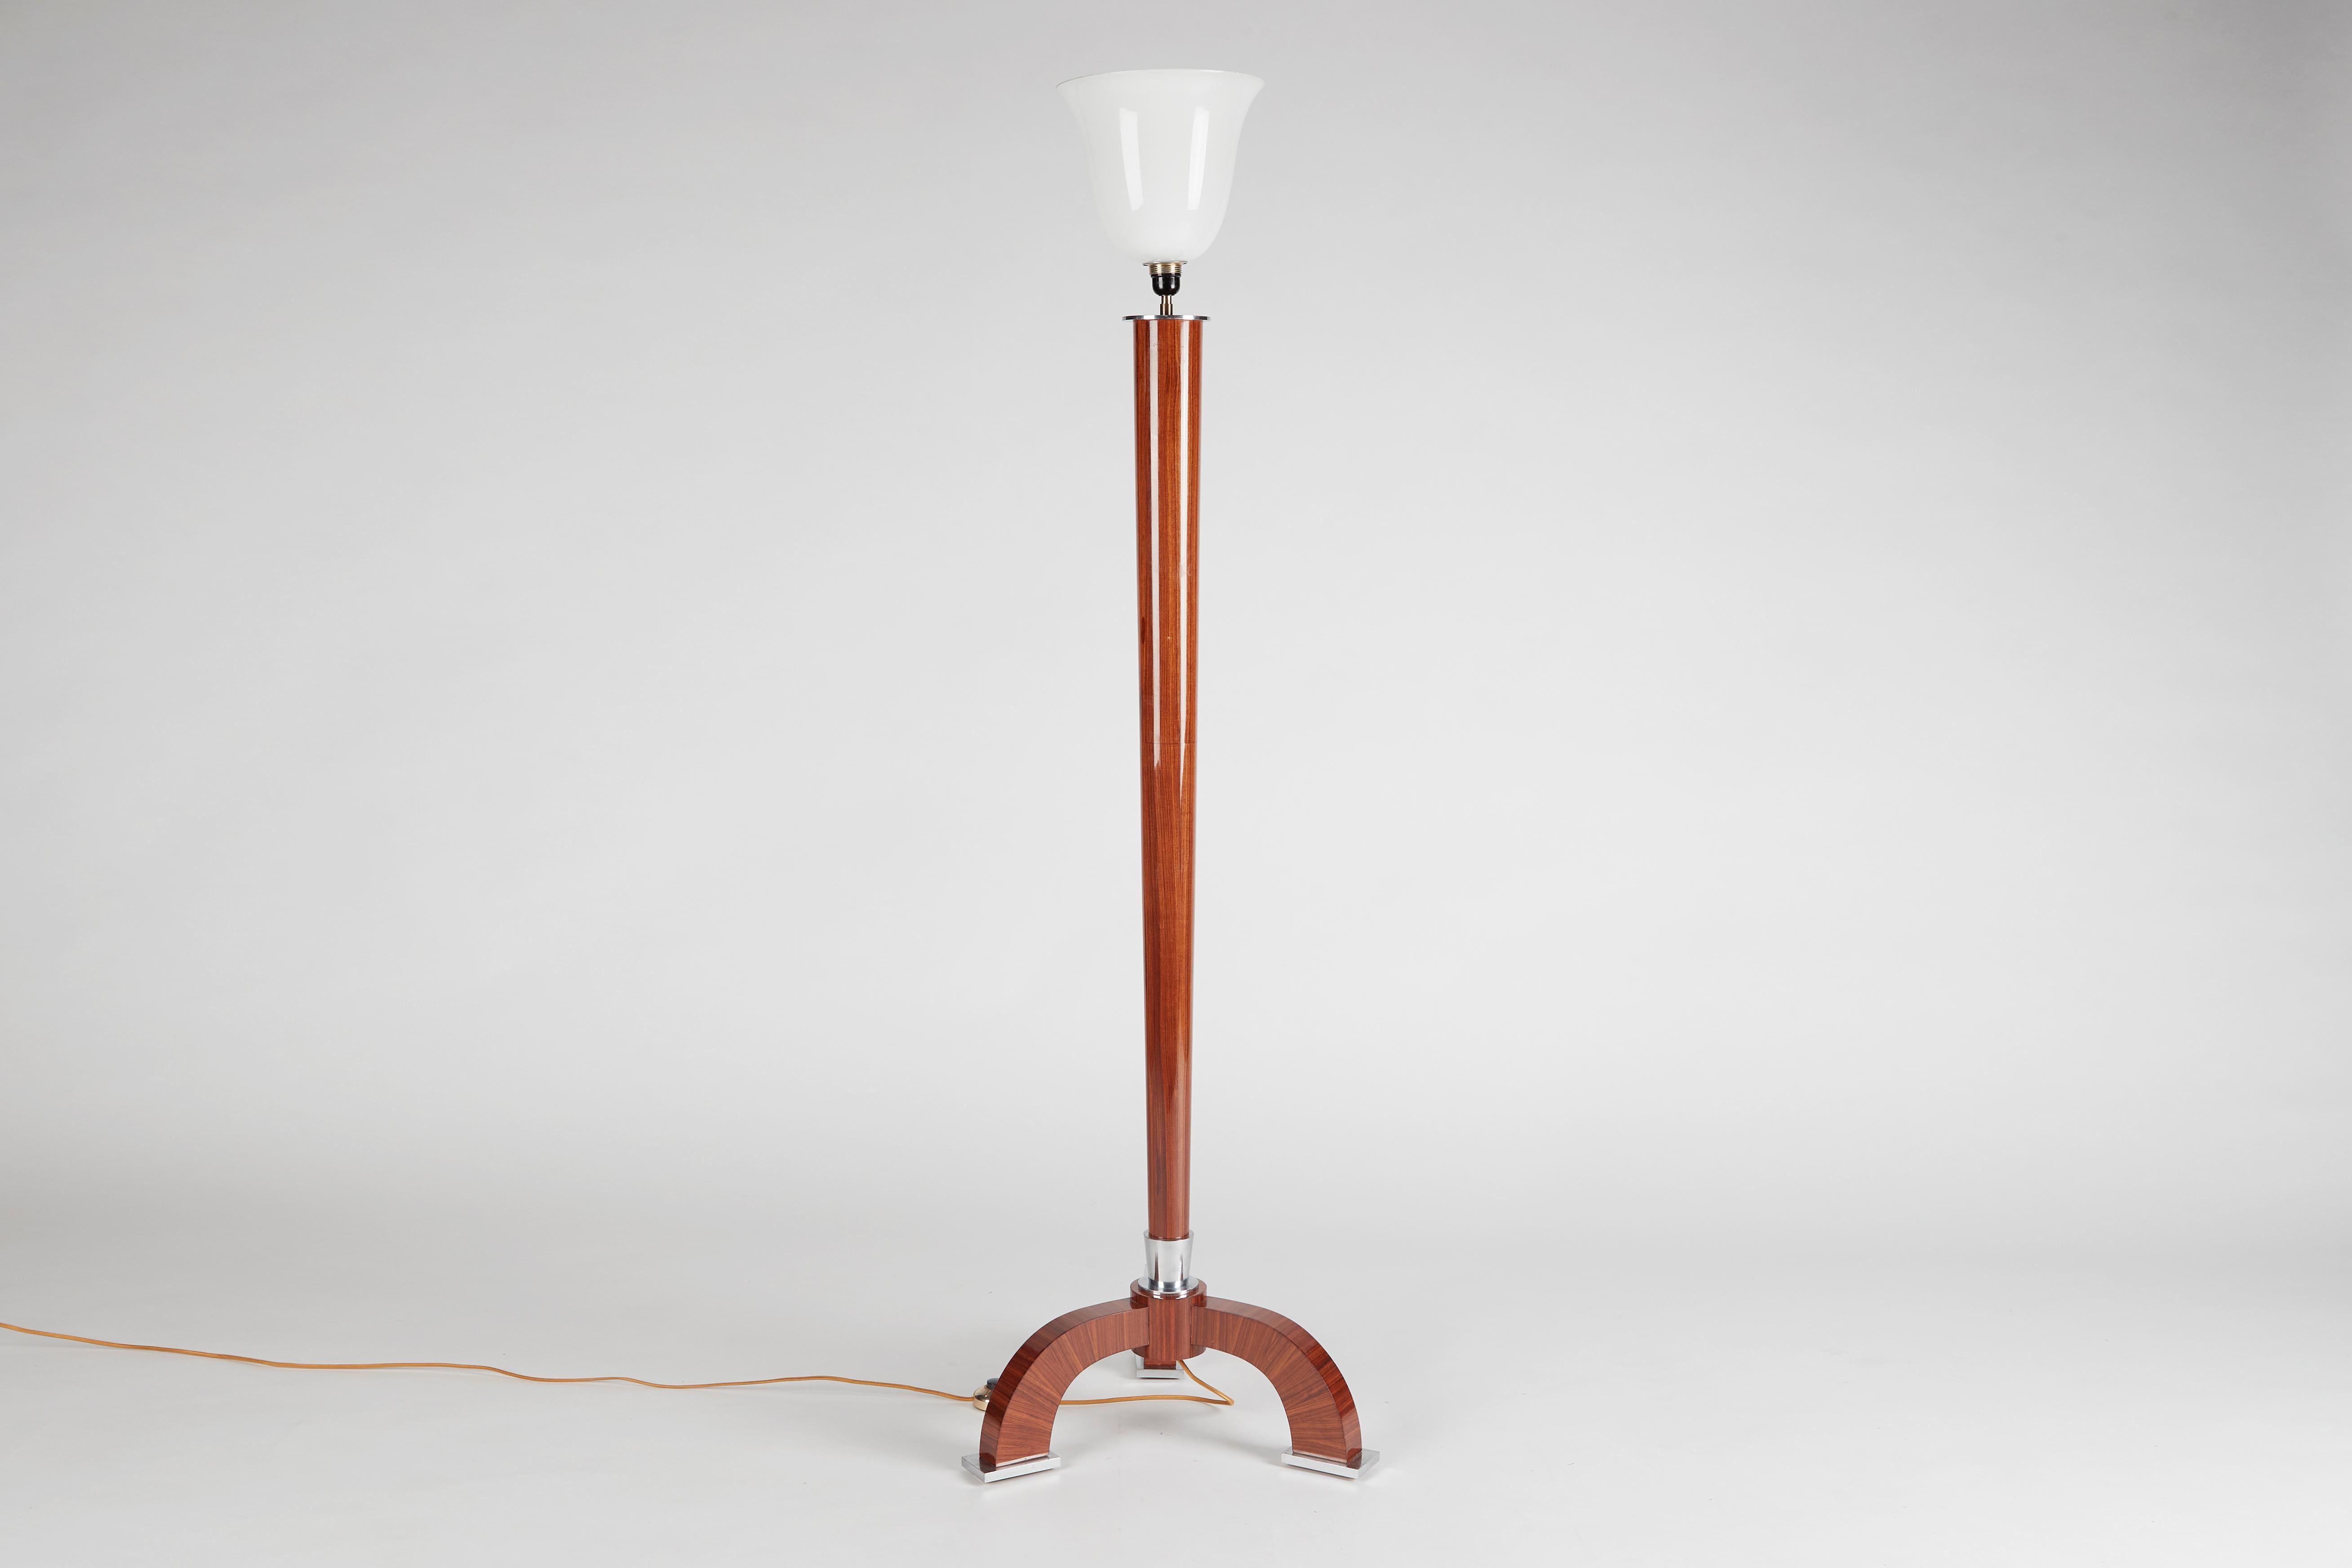 Diese elegante Stehlampe, ein Entwurf aus den frühen 1930er Jahren von Jules ?Leleu, zeichnet sich durch einen konisch zulaufenden Schaft aus Walnussfurnier aus - ein langes vertikales Element, das die spielerisch komplementären Formen der